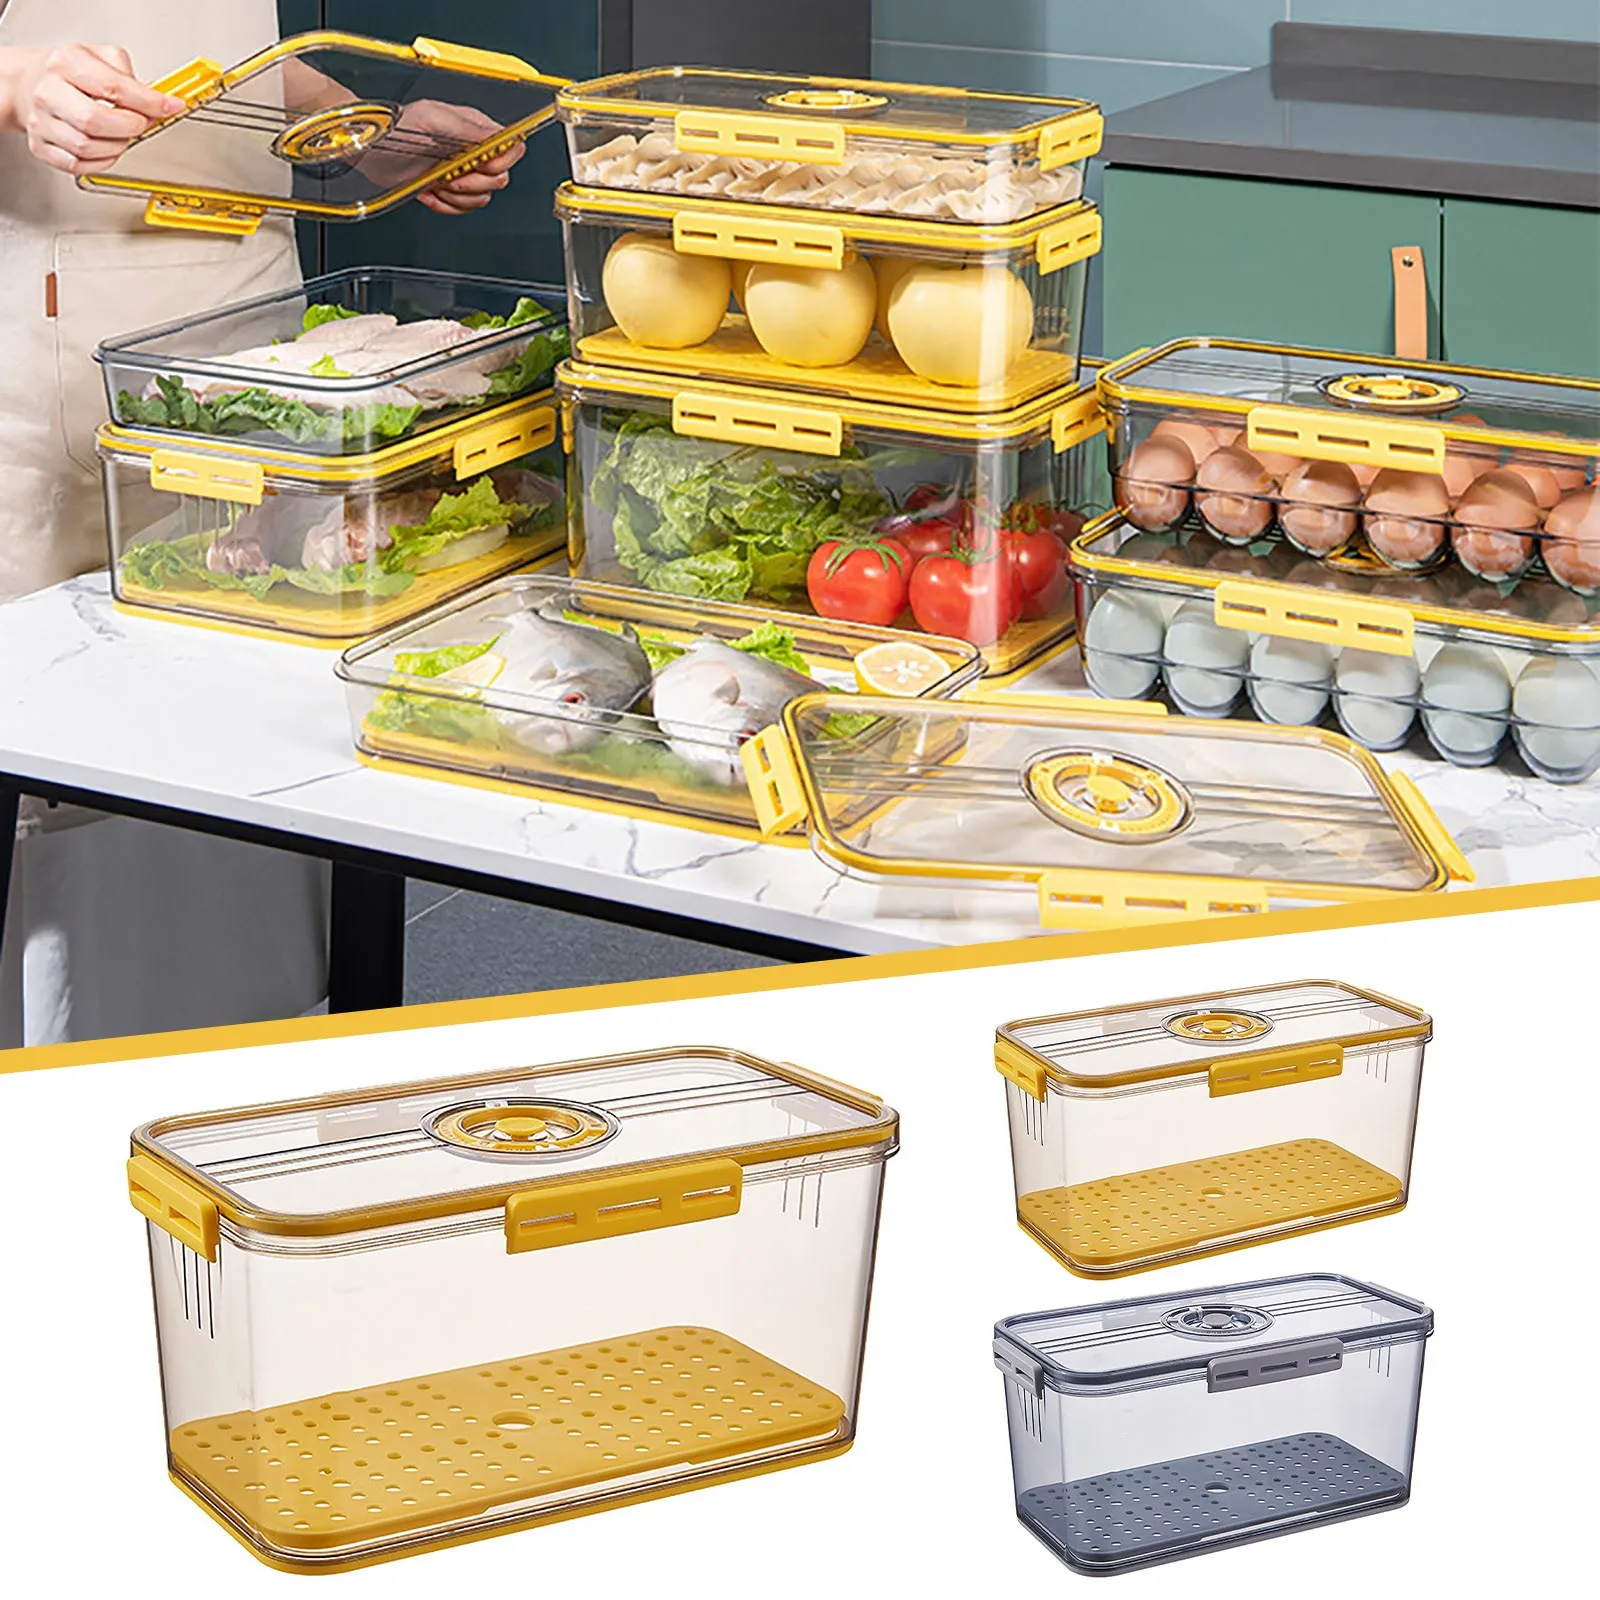 

Контейнер для хранения овощей и фруктов с зажимами для хранения в холодильнике